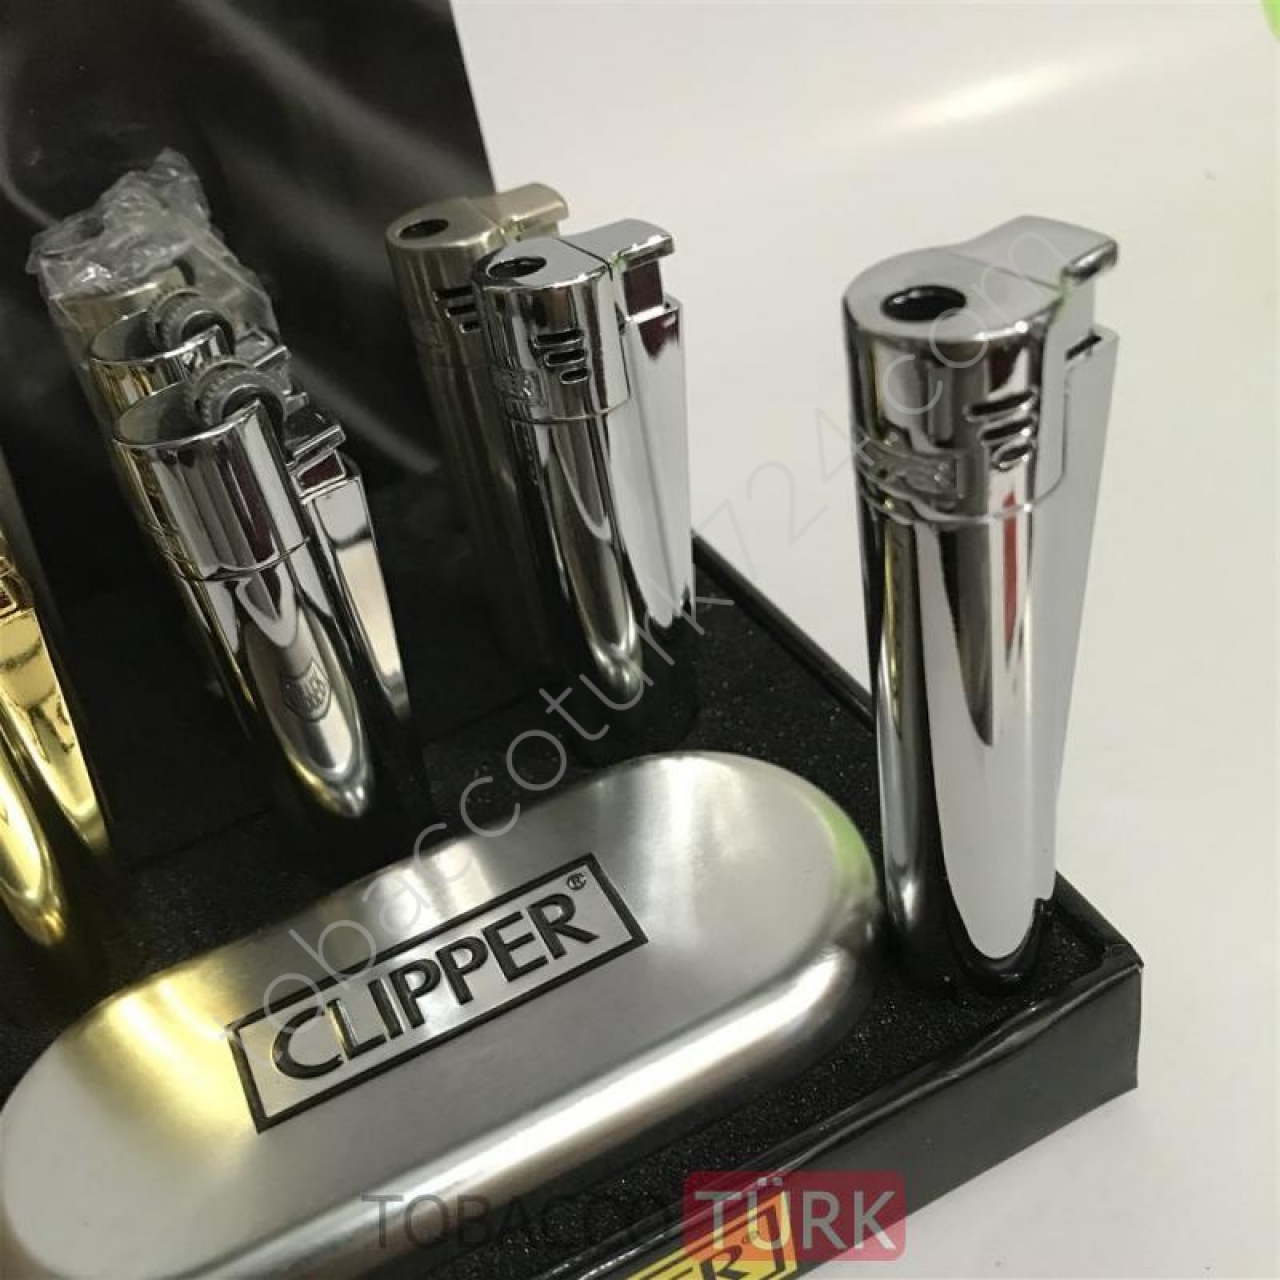 Orjinal Clipper Pürmüzlü Çakmak Metal Kutusunda 2Yıl Garantili